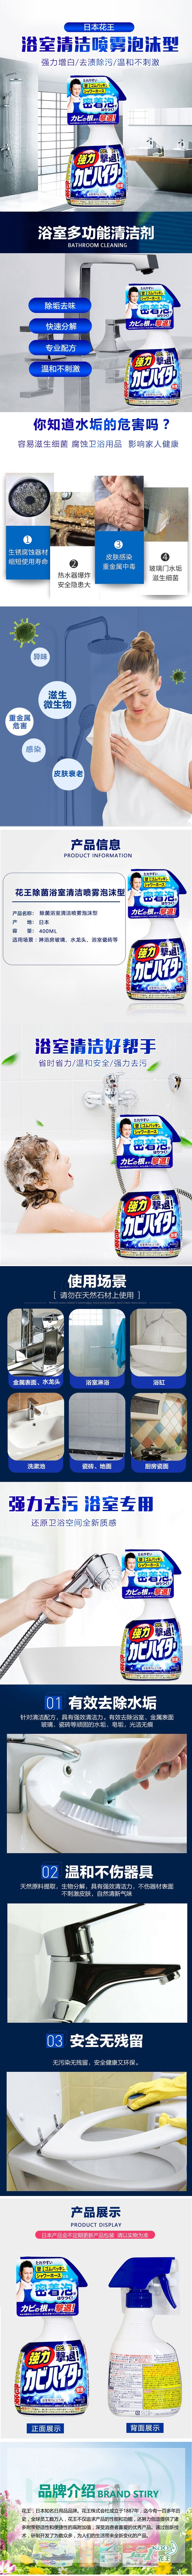 【日本 KAO】花王 浴室多功能清洁剂杀菌清洁除霉 喷雾泡沫型 400ML - @ - 2 - Sweet Living